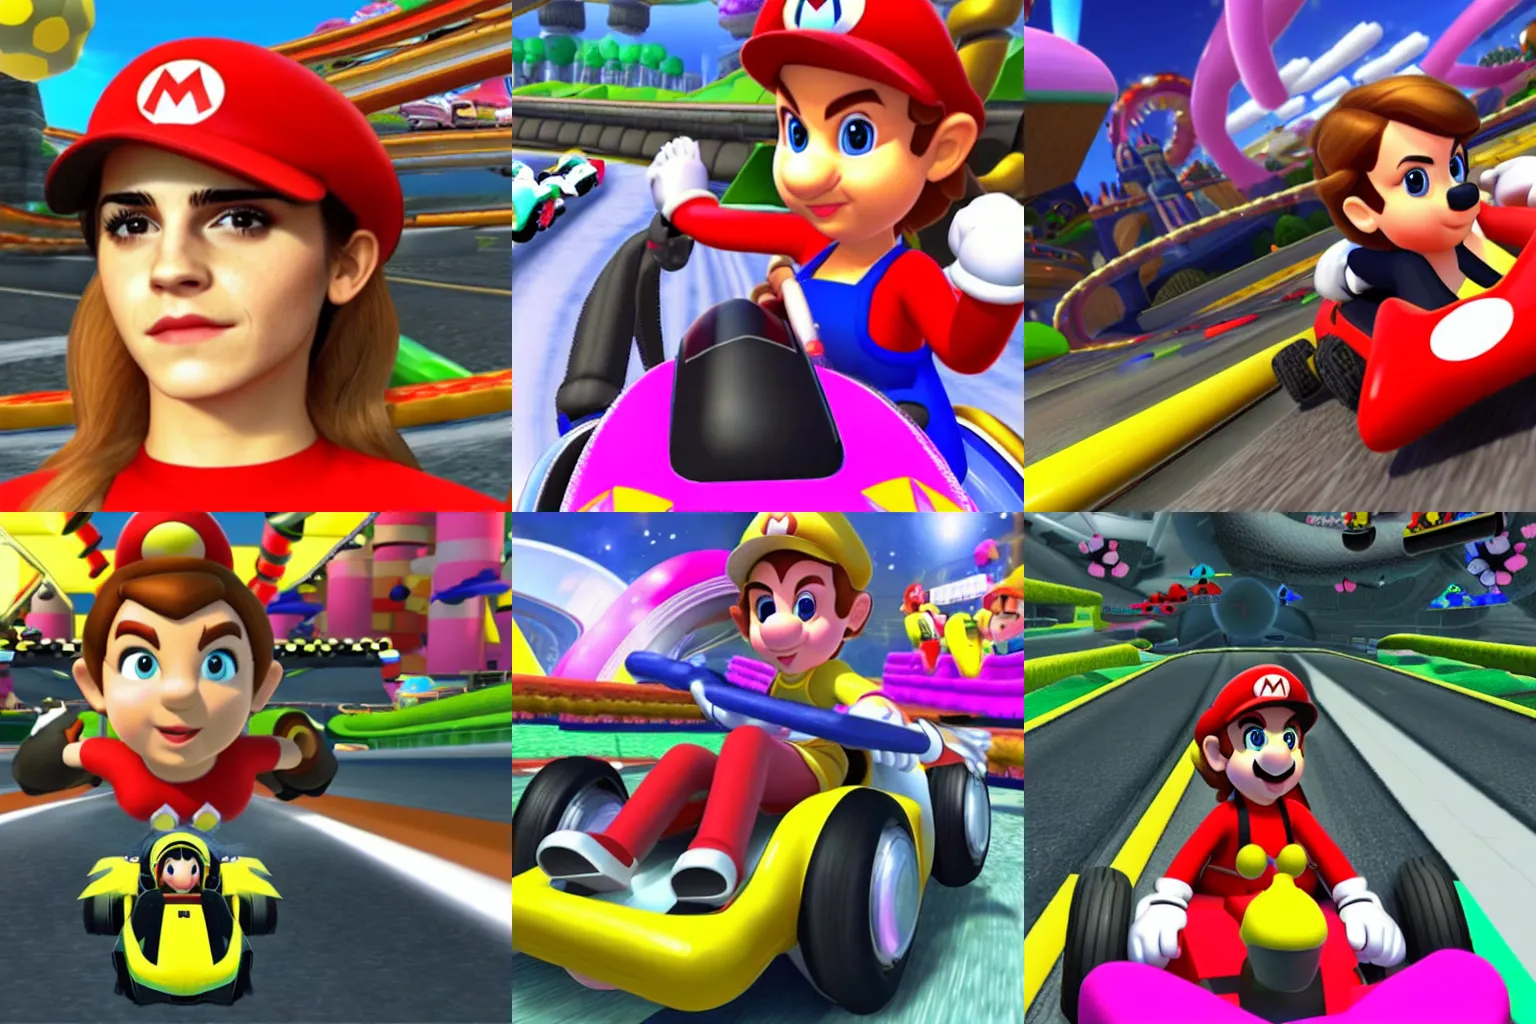 Prompt: Screenshot of Emma Watson in Mario Kart